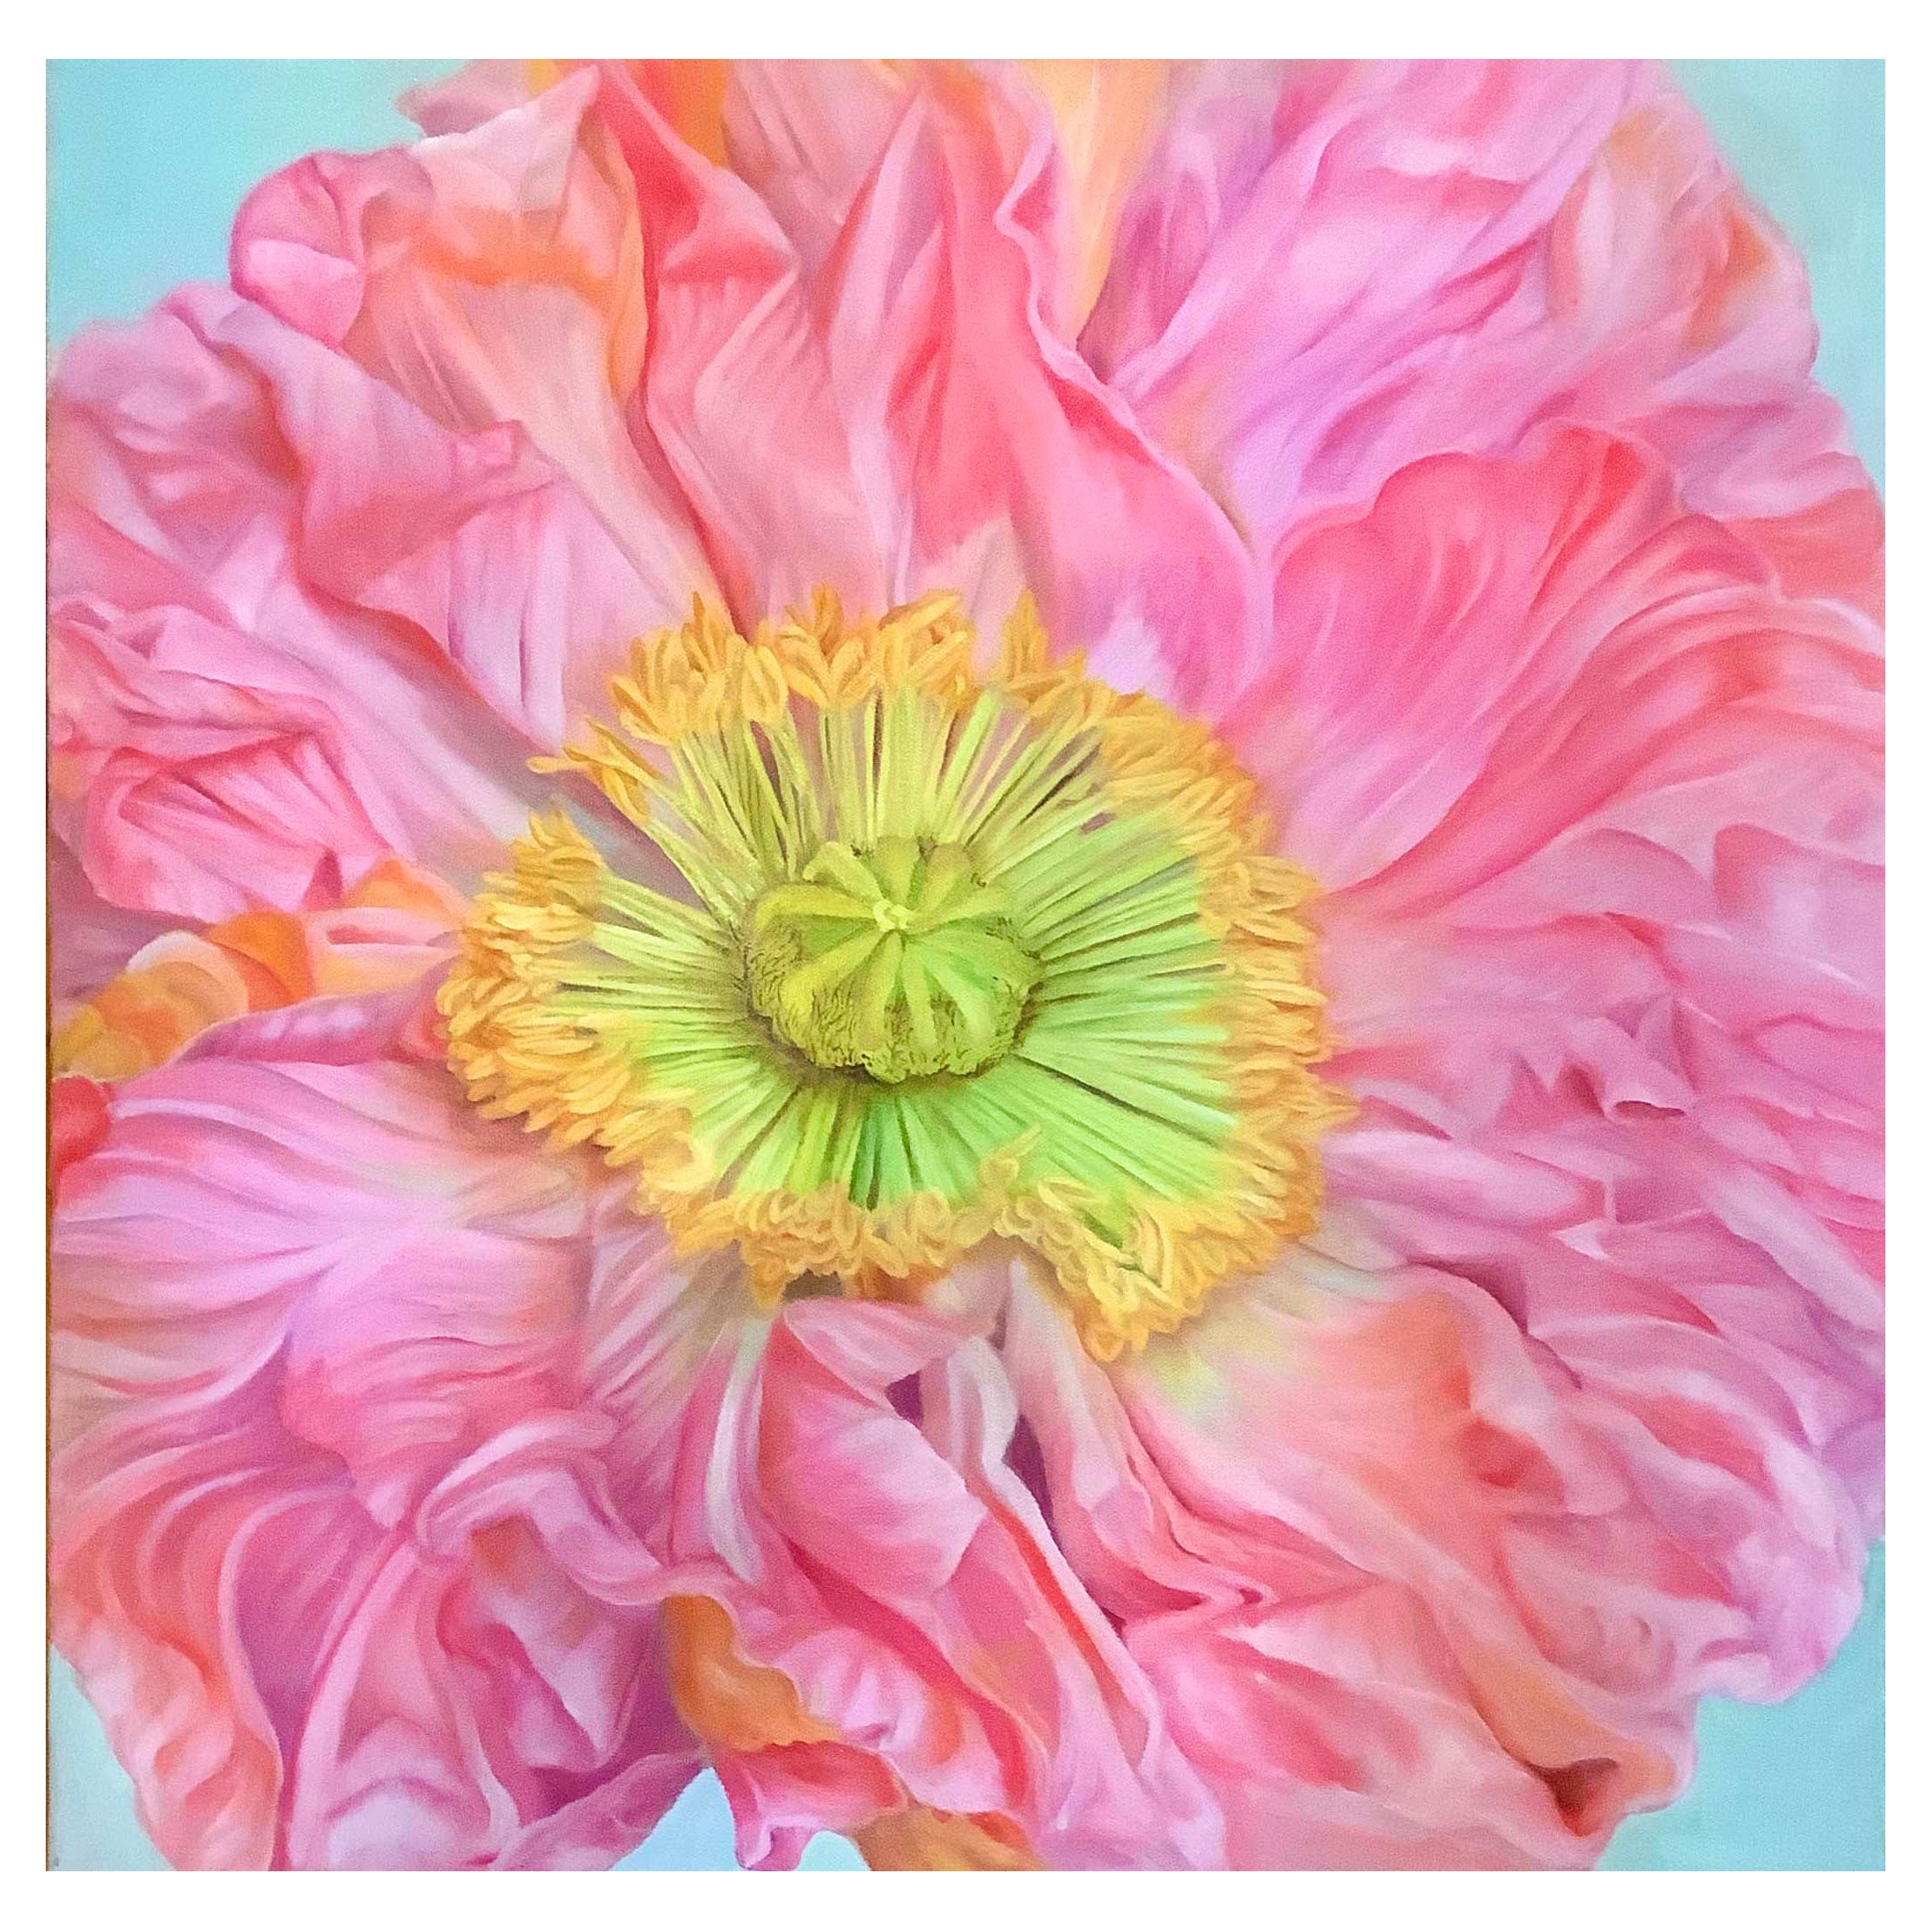 Framed Oil on Canvas "Paulette" - Poppy Flower by Shelly Gurton For Sale